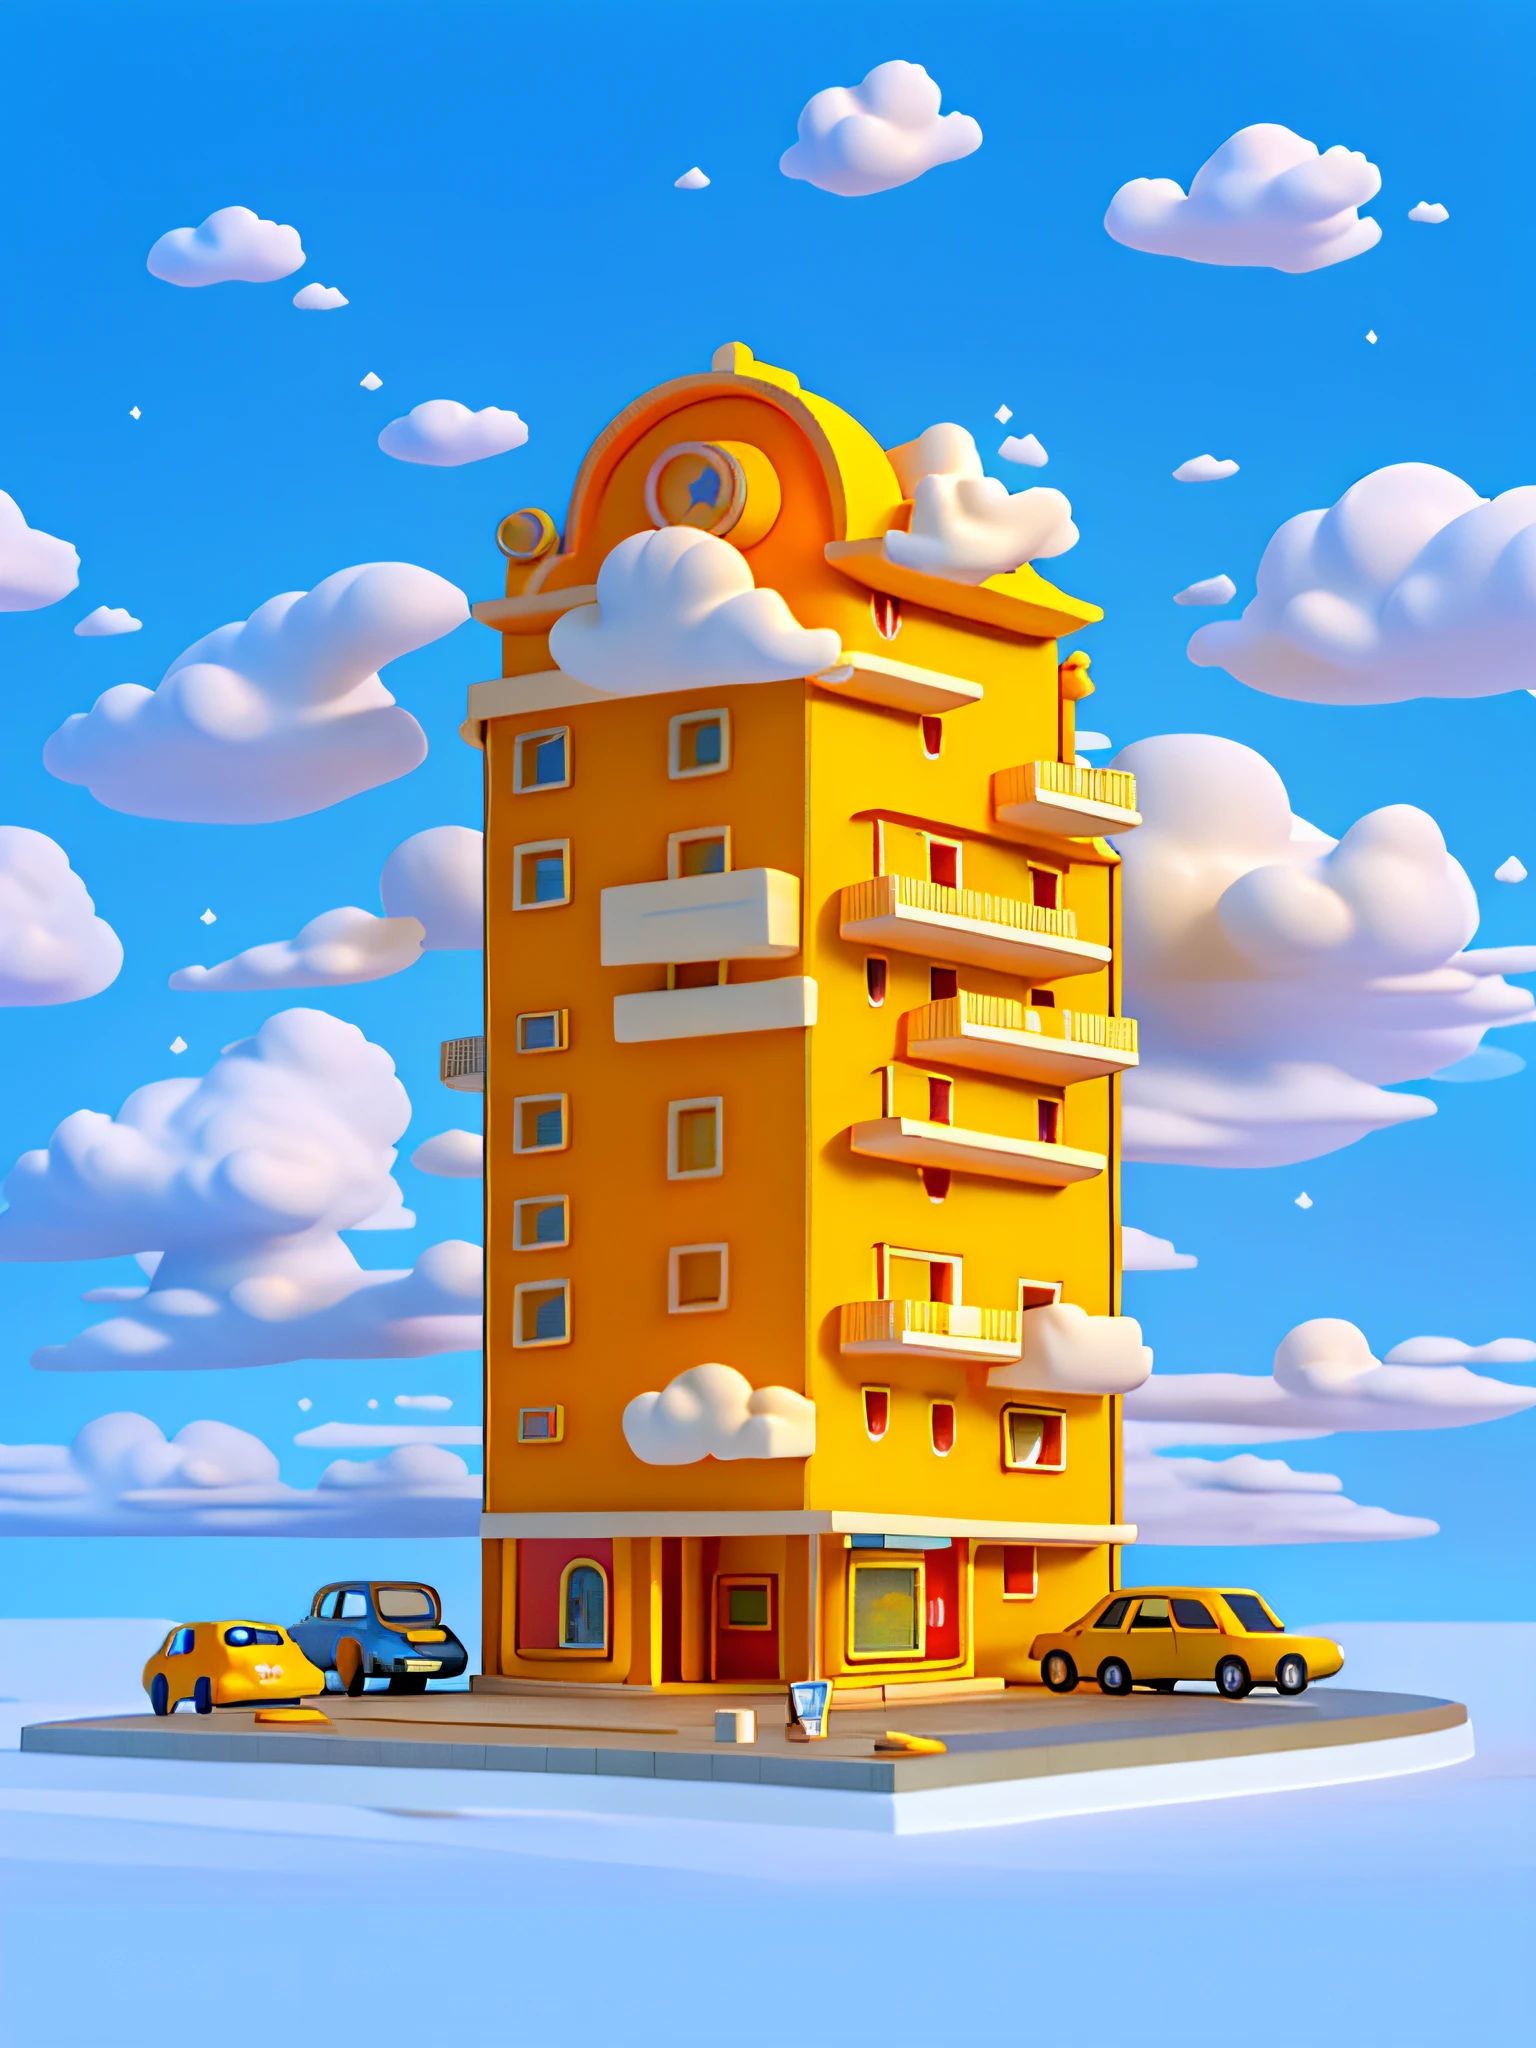 (Meisterwerk), (beste Qualität), (Extrem detailliert) Einfaches Cartoon-Hotelgebäude, Hotel Flachbau, Spielzeugmodell, Wolken, Autos, Draufsicht, sauberer Hintergrund, Blassgelbe und blassorange Gebäude,